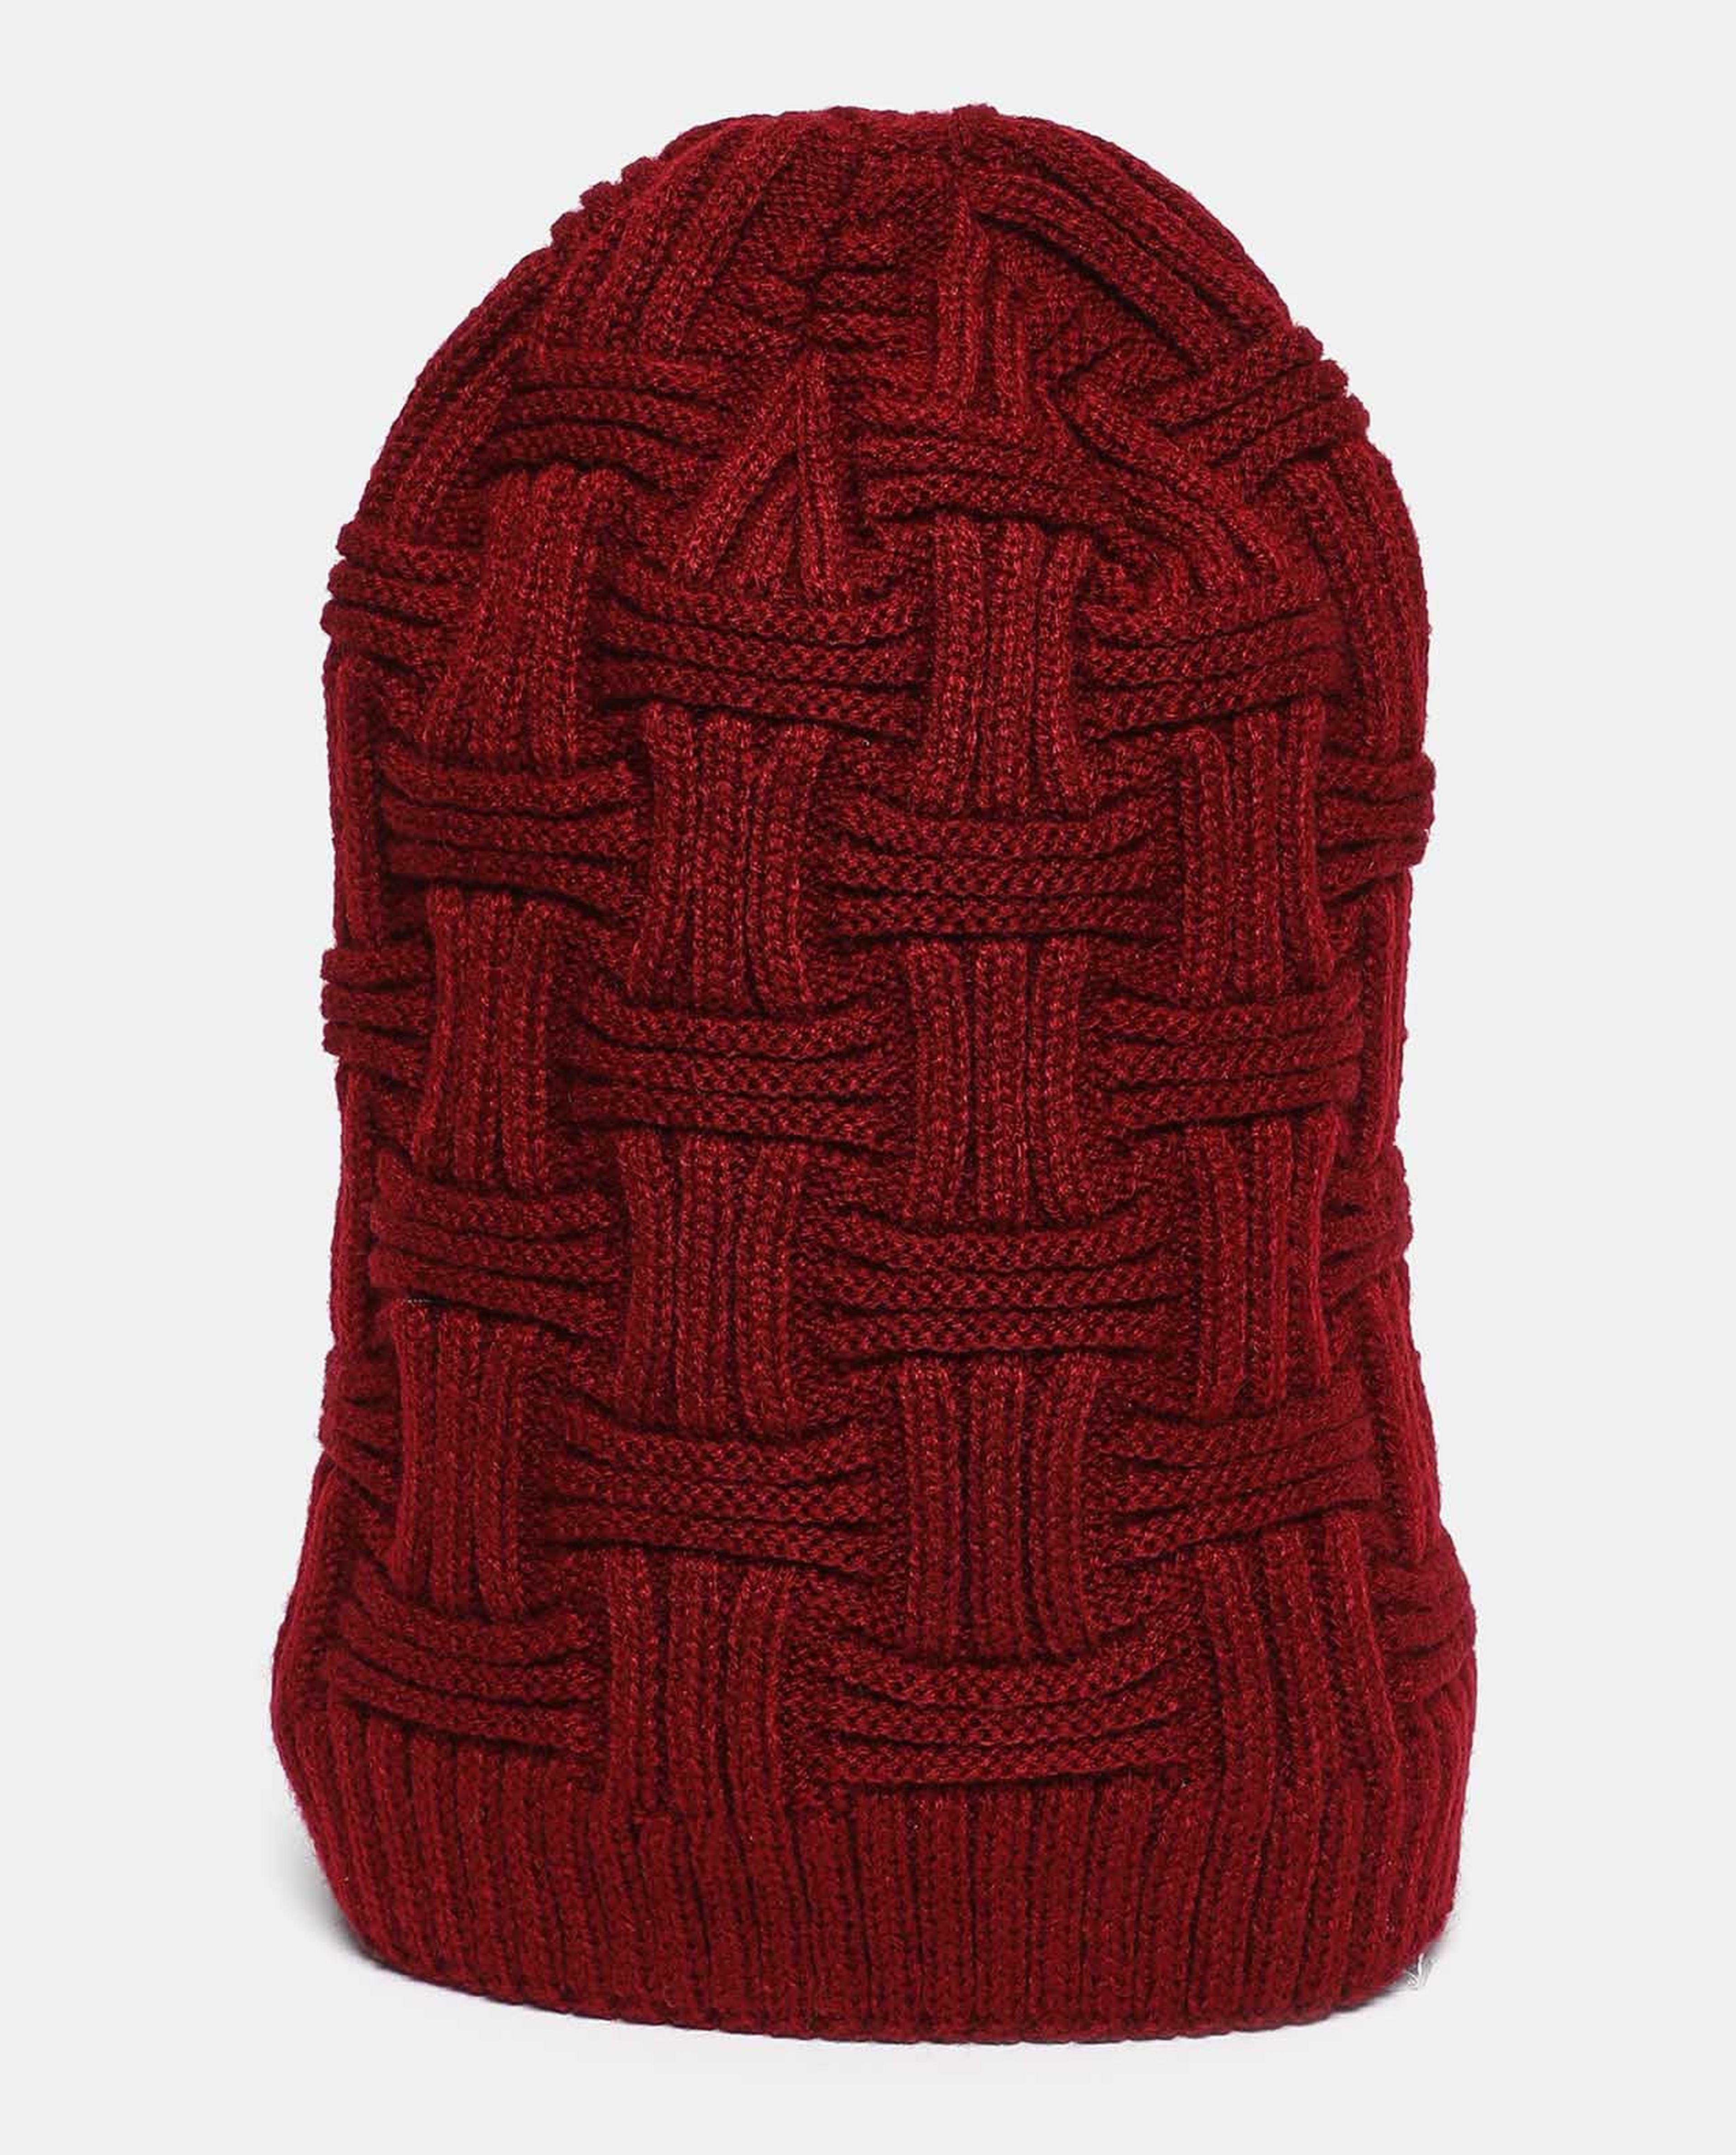 Self Design Knitted Beanie Cap